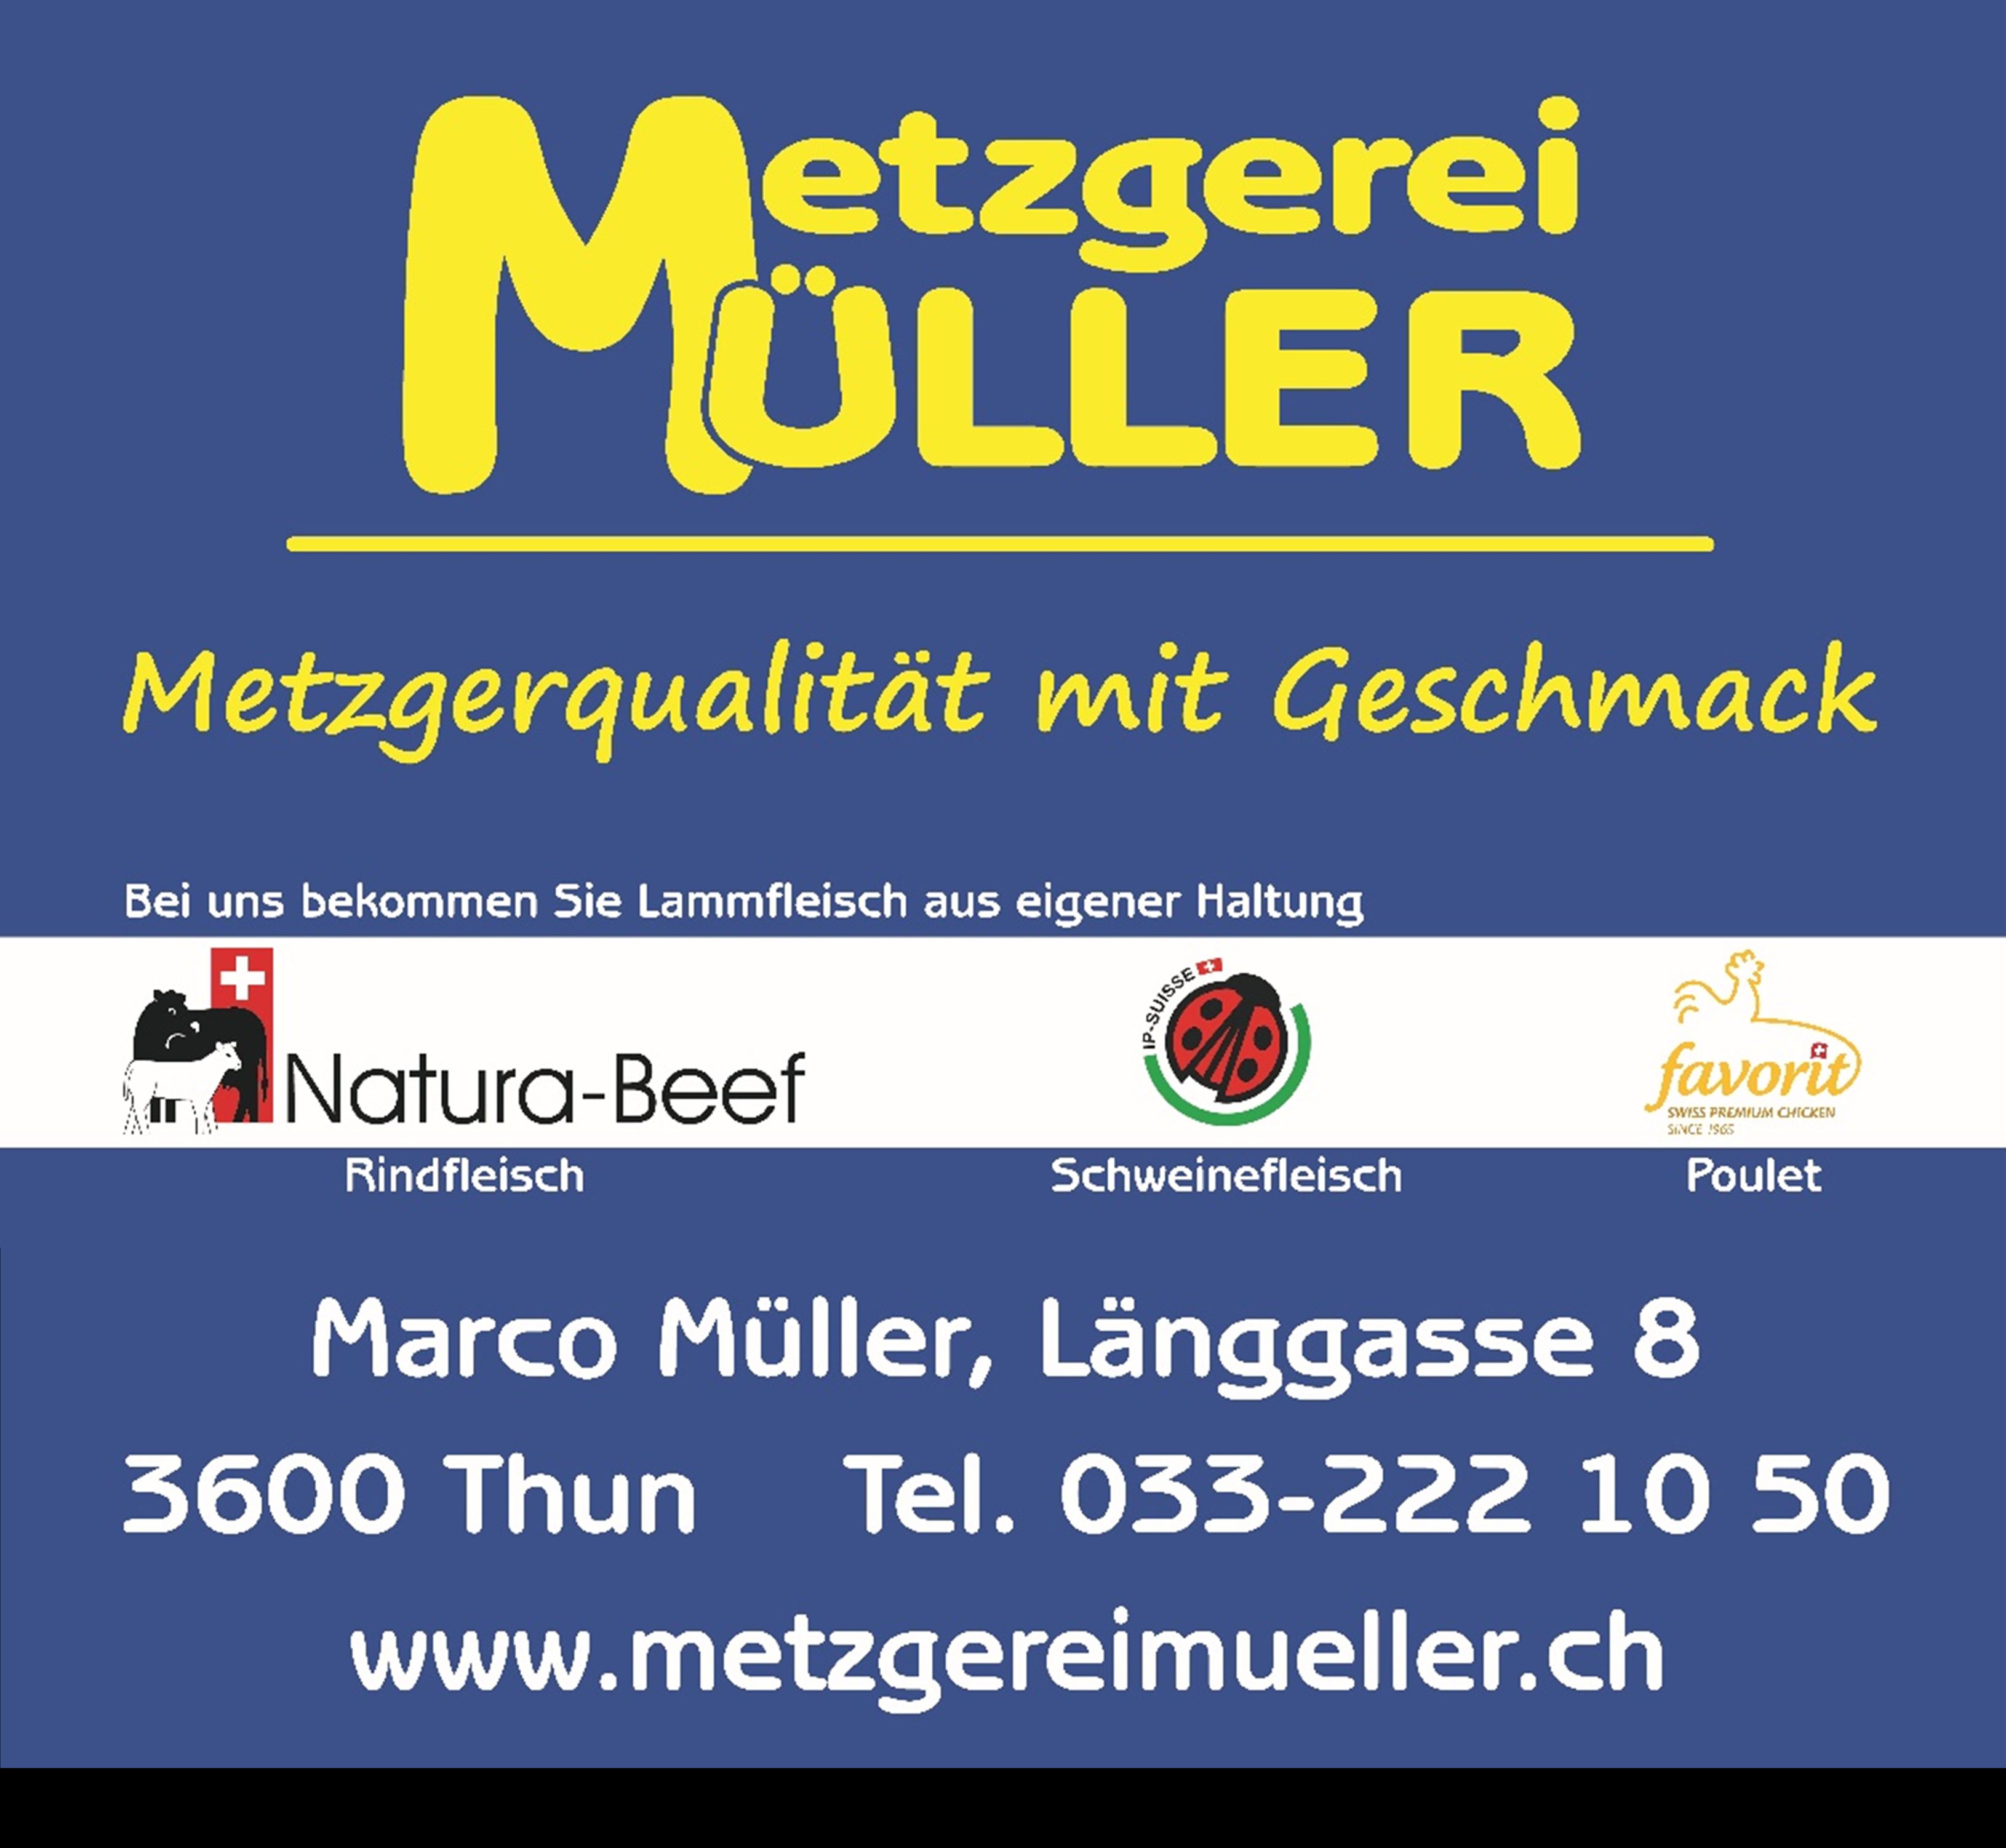 www.metzgereimueller.ch